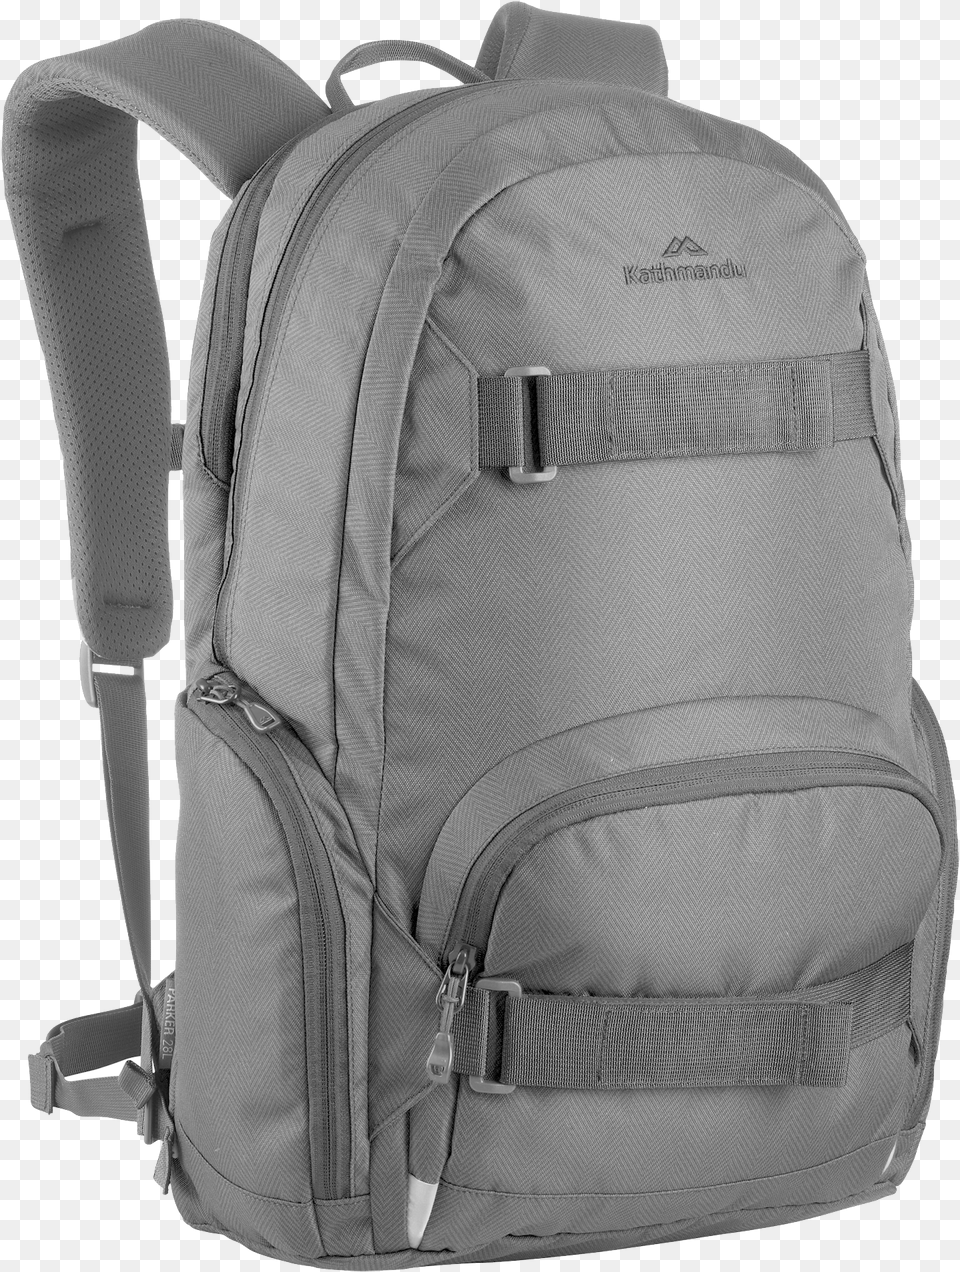 Backpack, Bag, Clothing, Vest, Backpacking Png Image